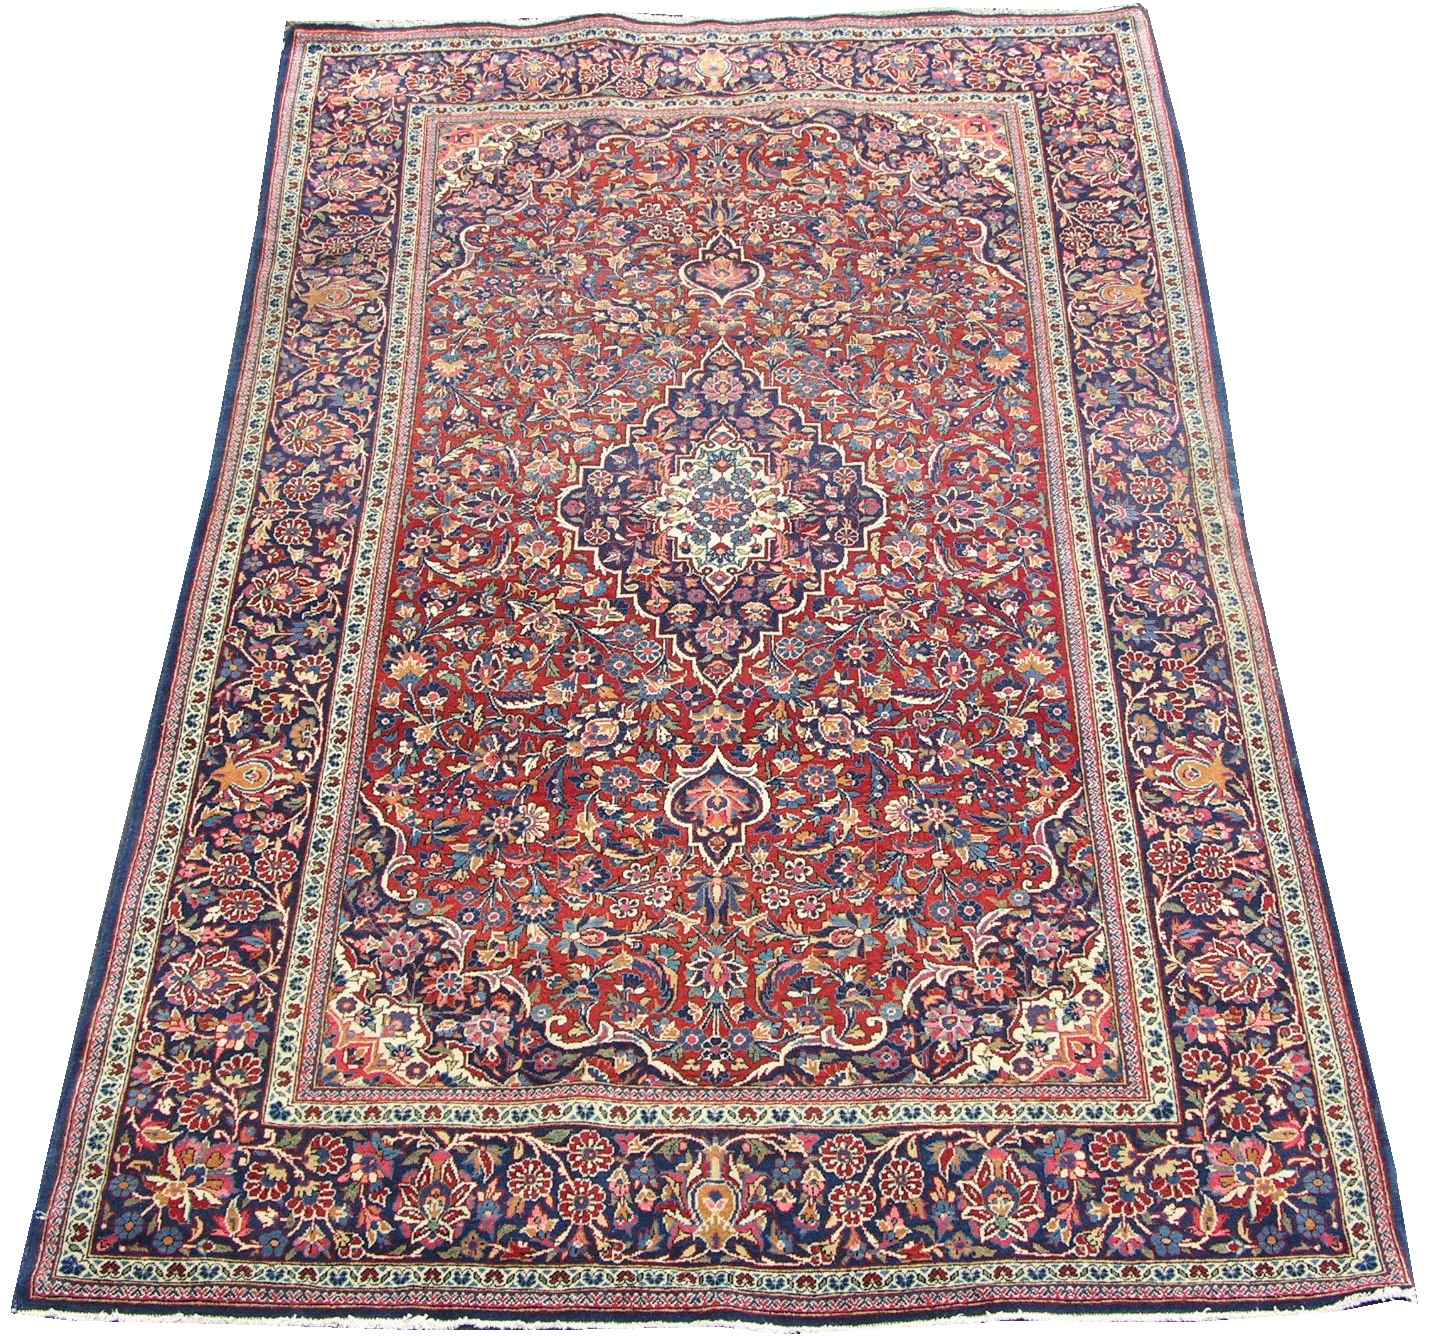 A Kashan Carpet, 05.20.06, Sold: $488.75